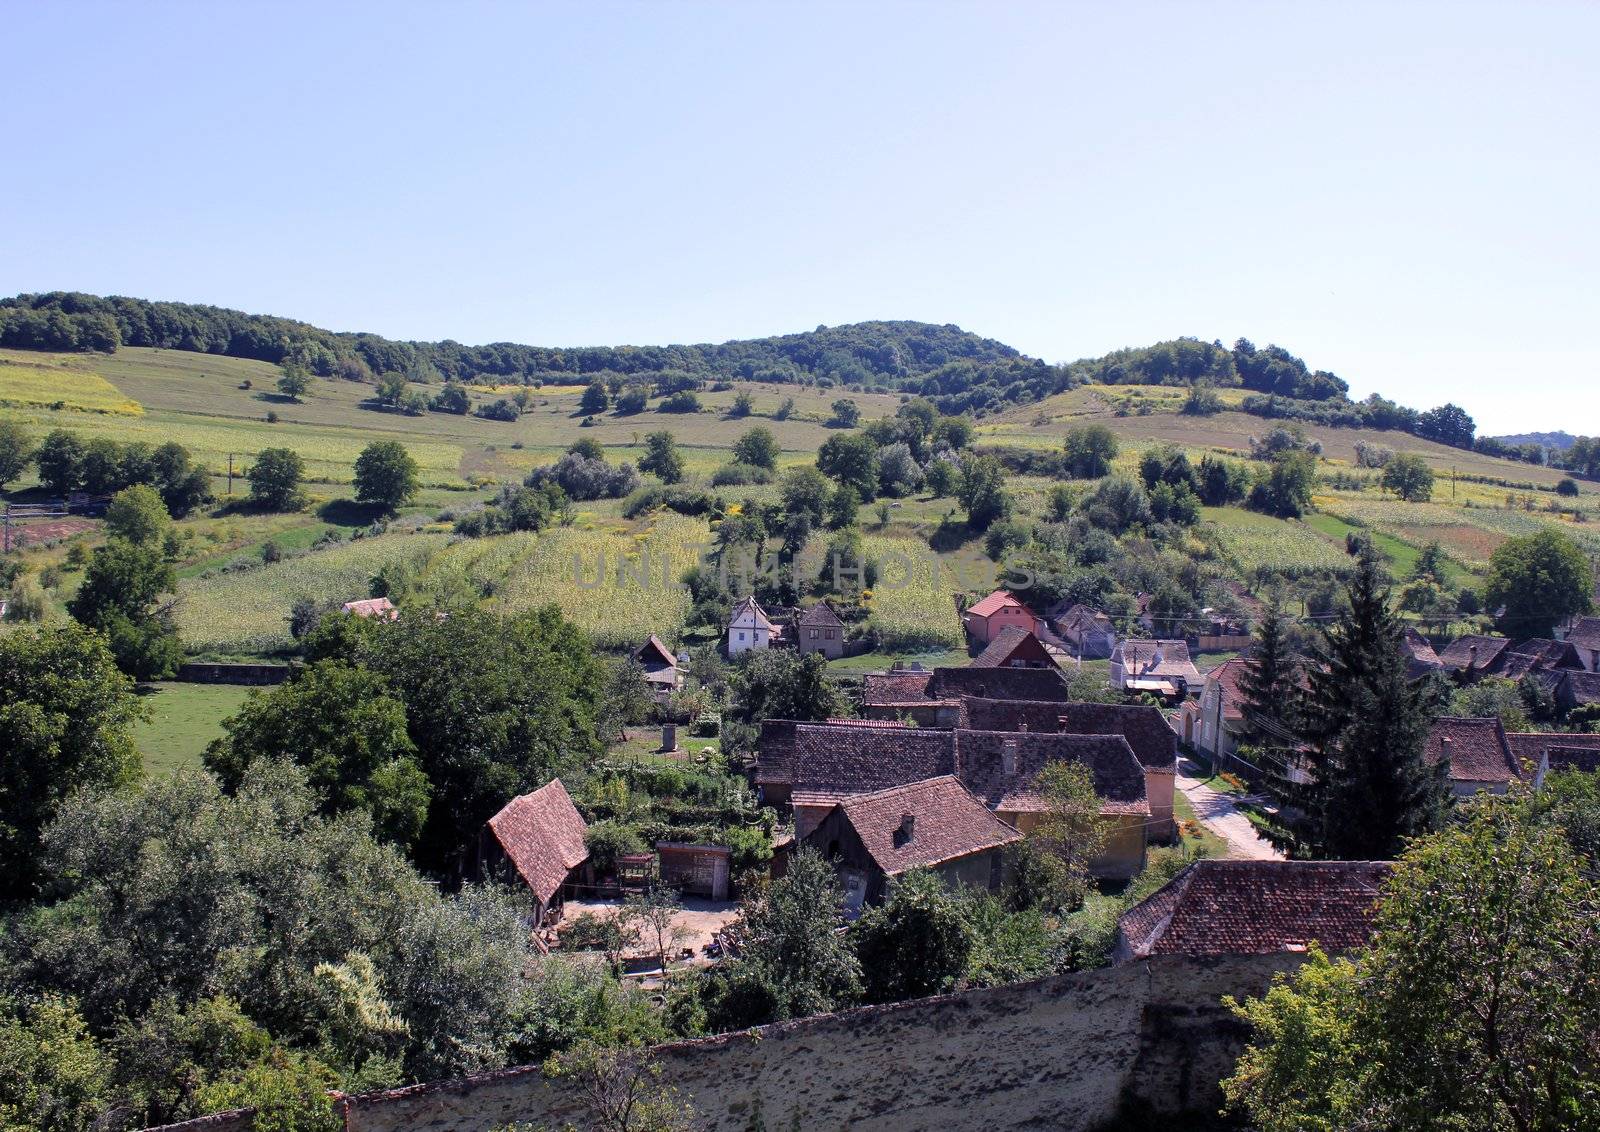 Sachs village of Biertan in the summer